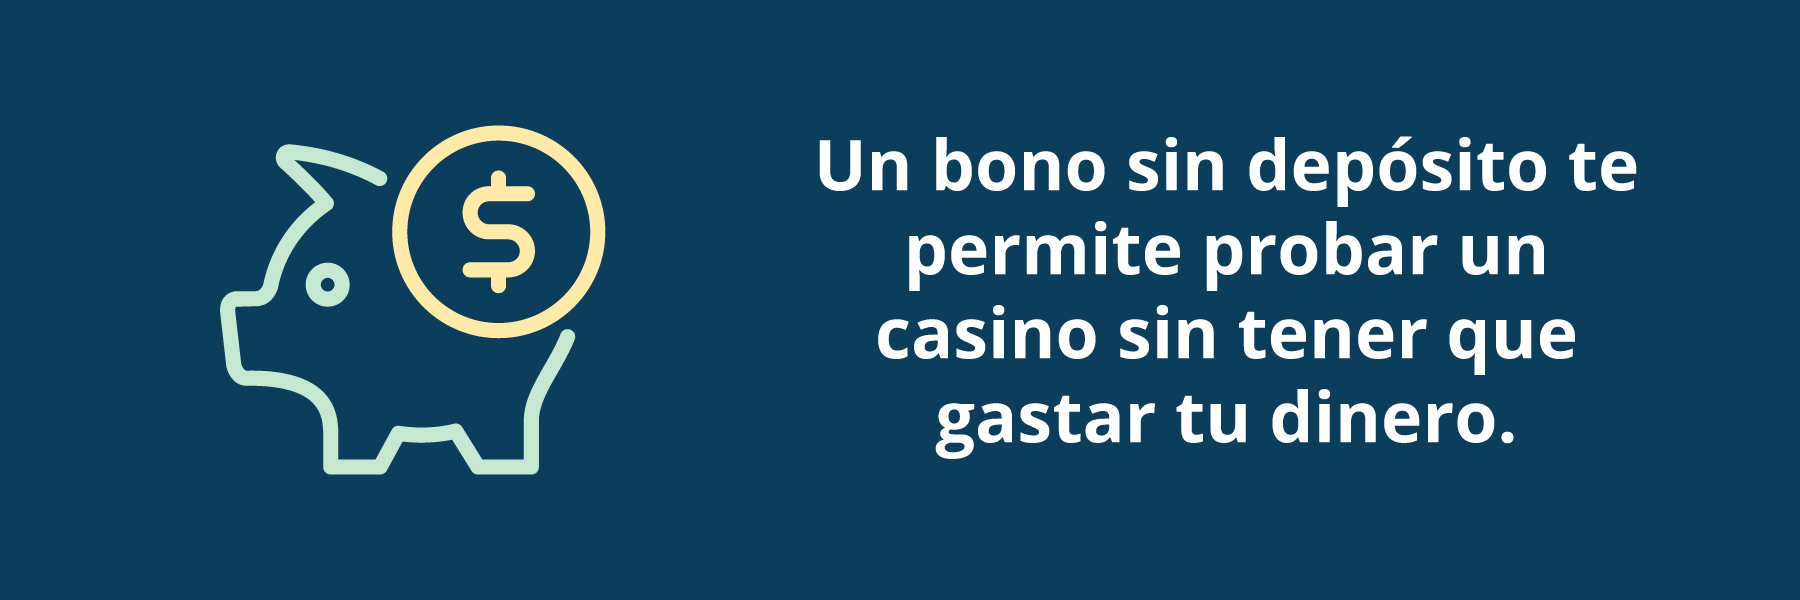 betfair casino bono sin deposito